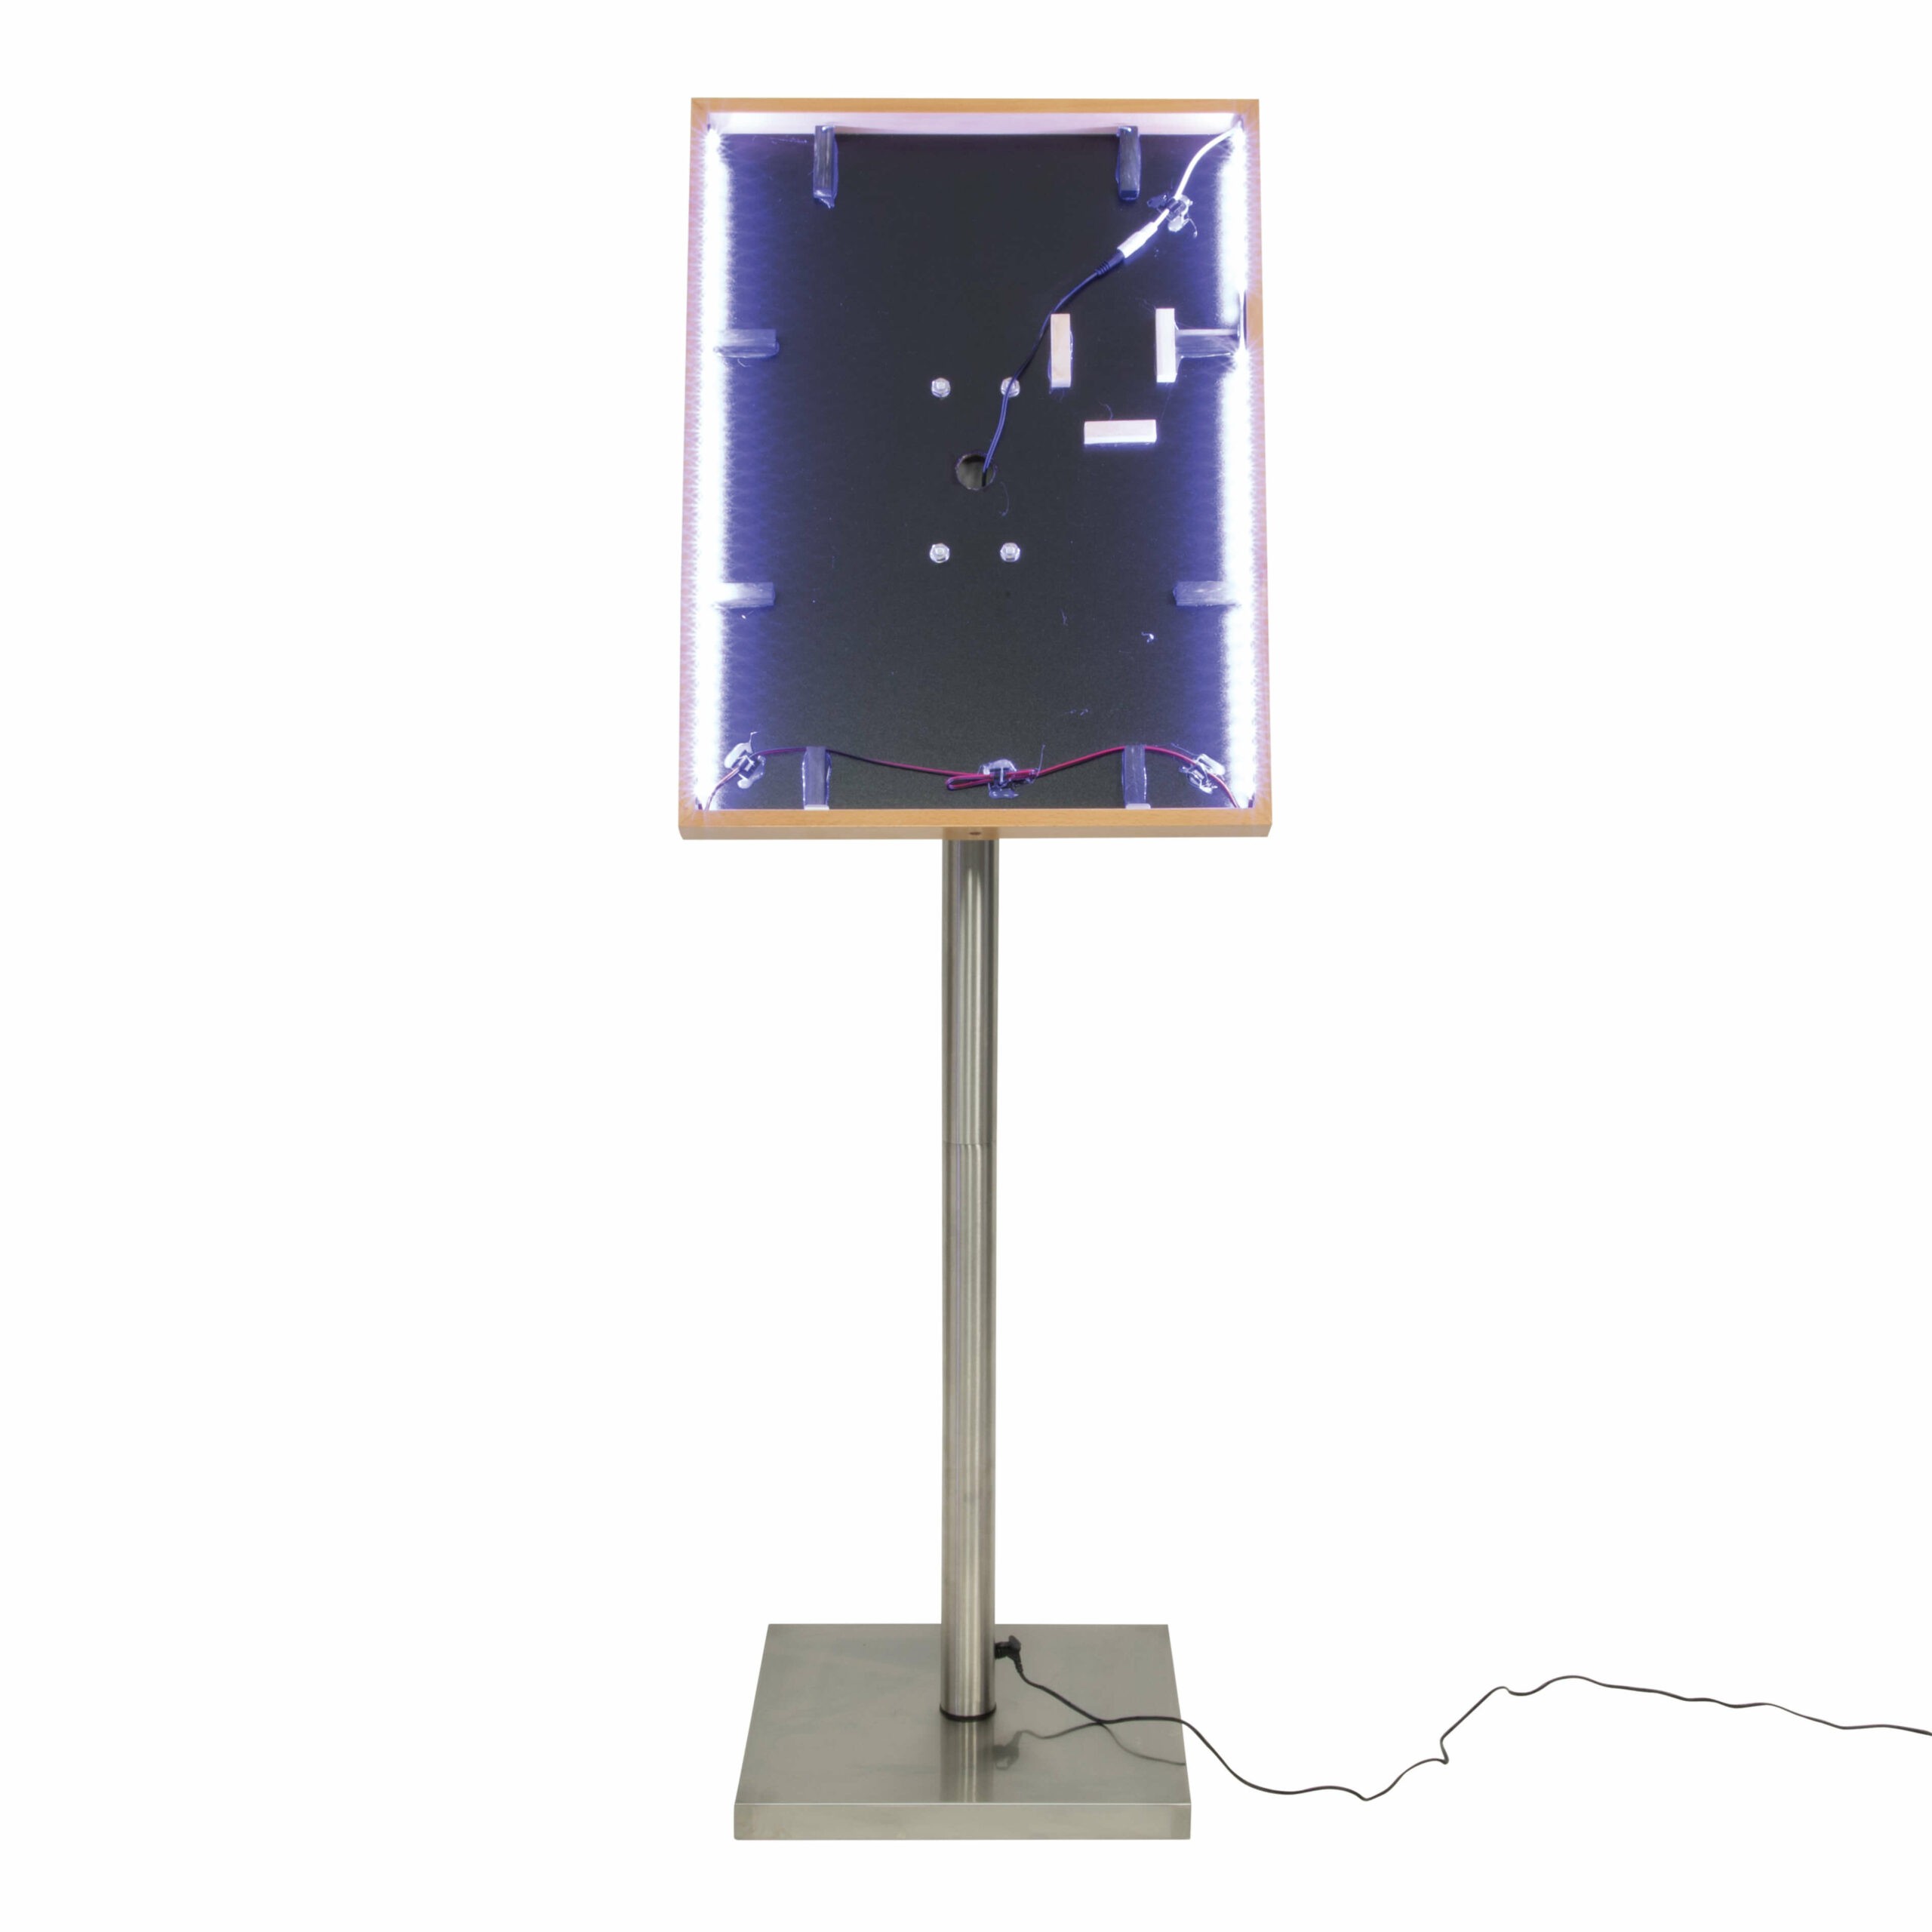 Šviesaus medžio faktūros 4xA4 formato meniu stovas su LED apšvietimu MCS-4A4